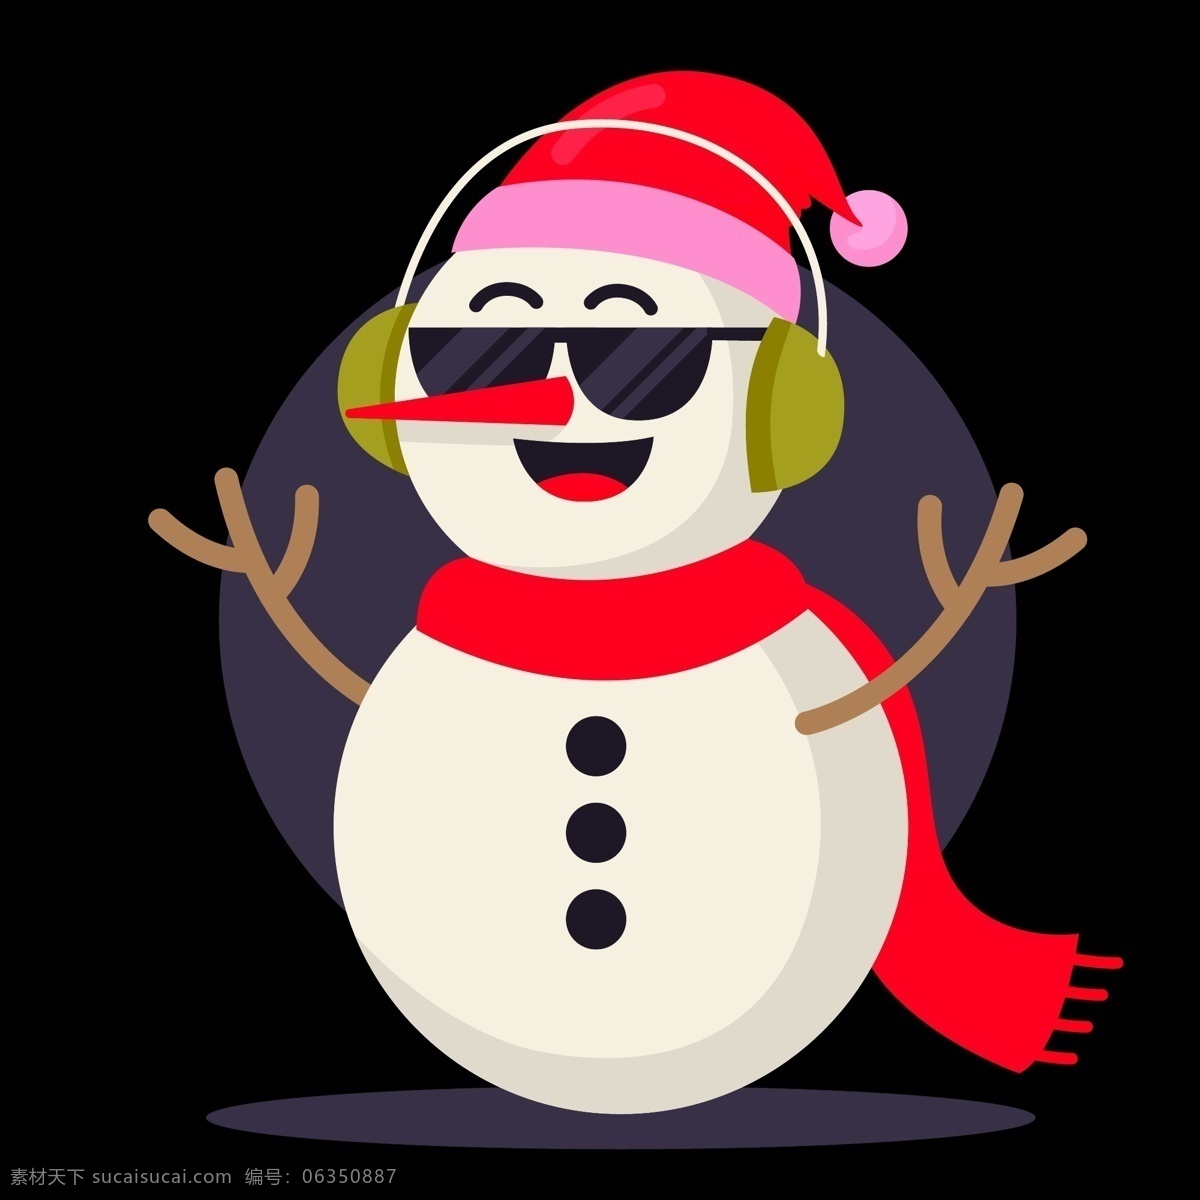 创意 大 眼睛 圣诞 物品 矢量 素材图片 大眼睛 矢量图 ui 手袋 圣诞节 贺卡 邀请函 新年 音乐 围巾 帽子 可爱 雪人 下雪 堆雪人